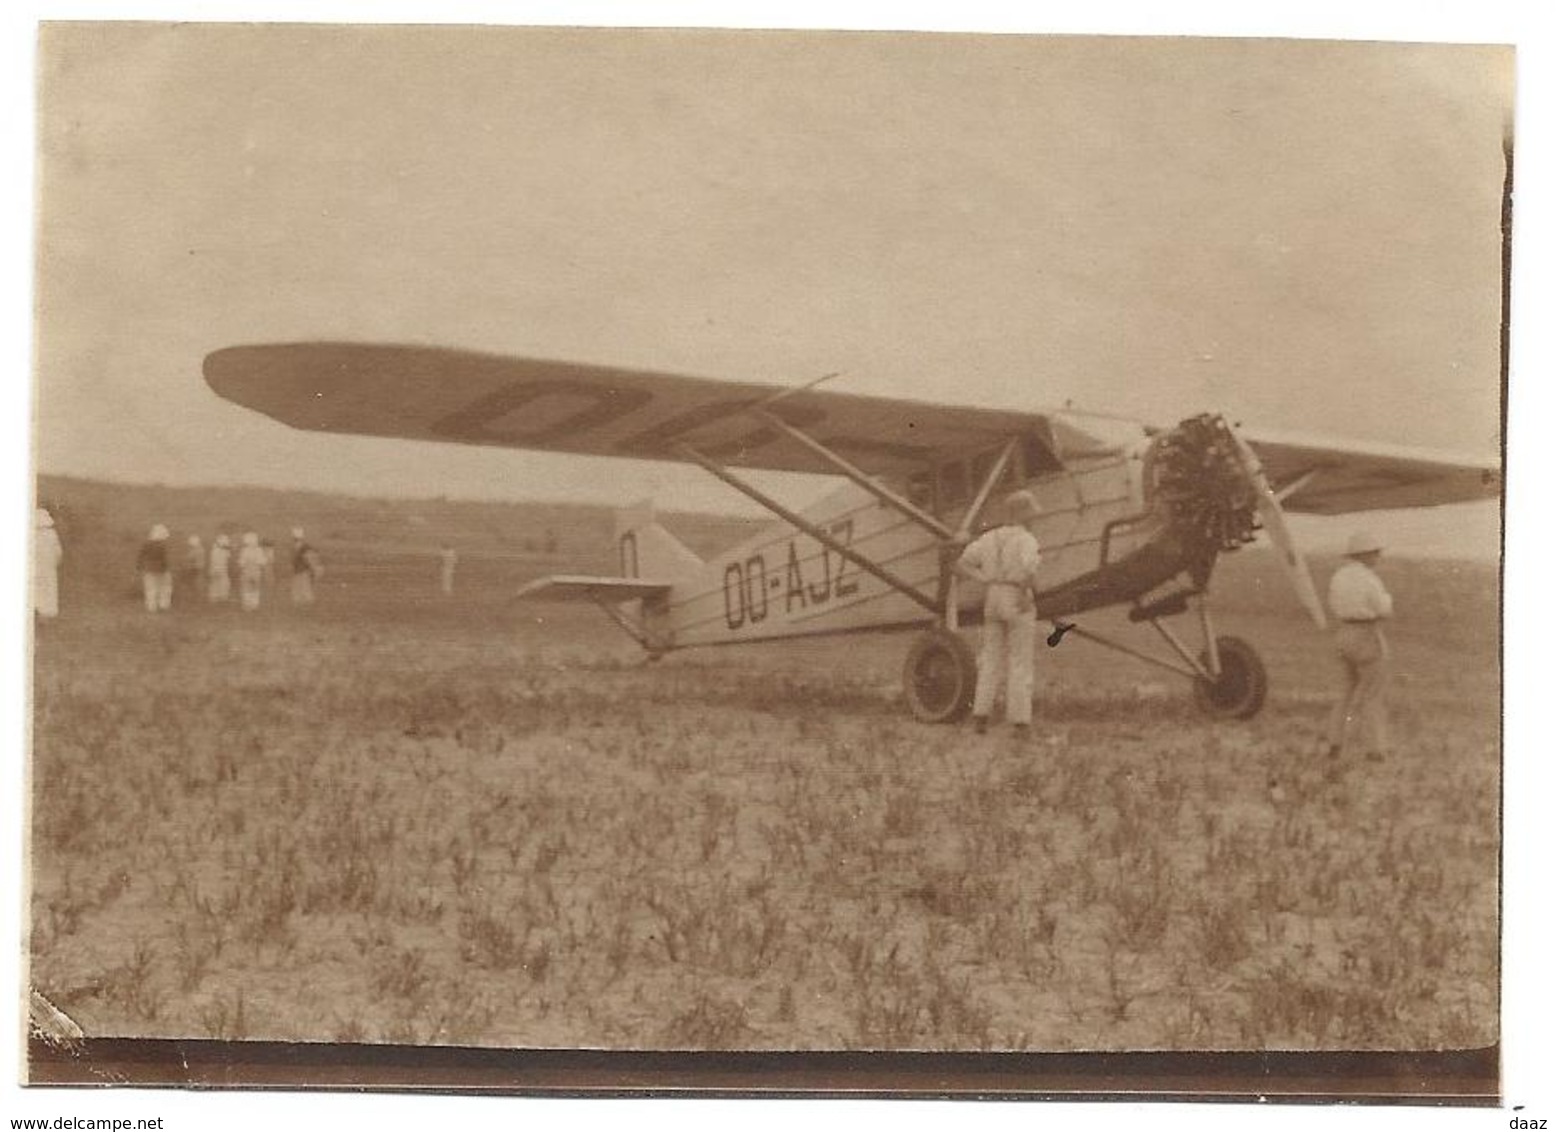 Avion De Edmond Thieffry Albertville Congo 1929  (Avimeta ) Aviation Photo 8x11 - Aviación